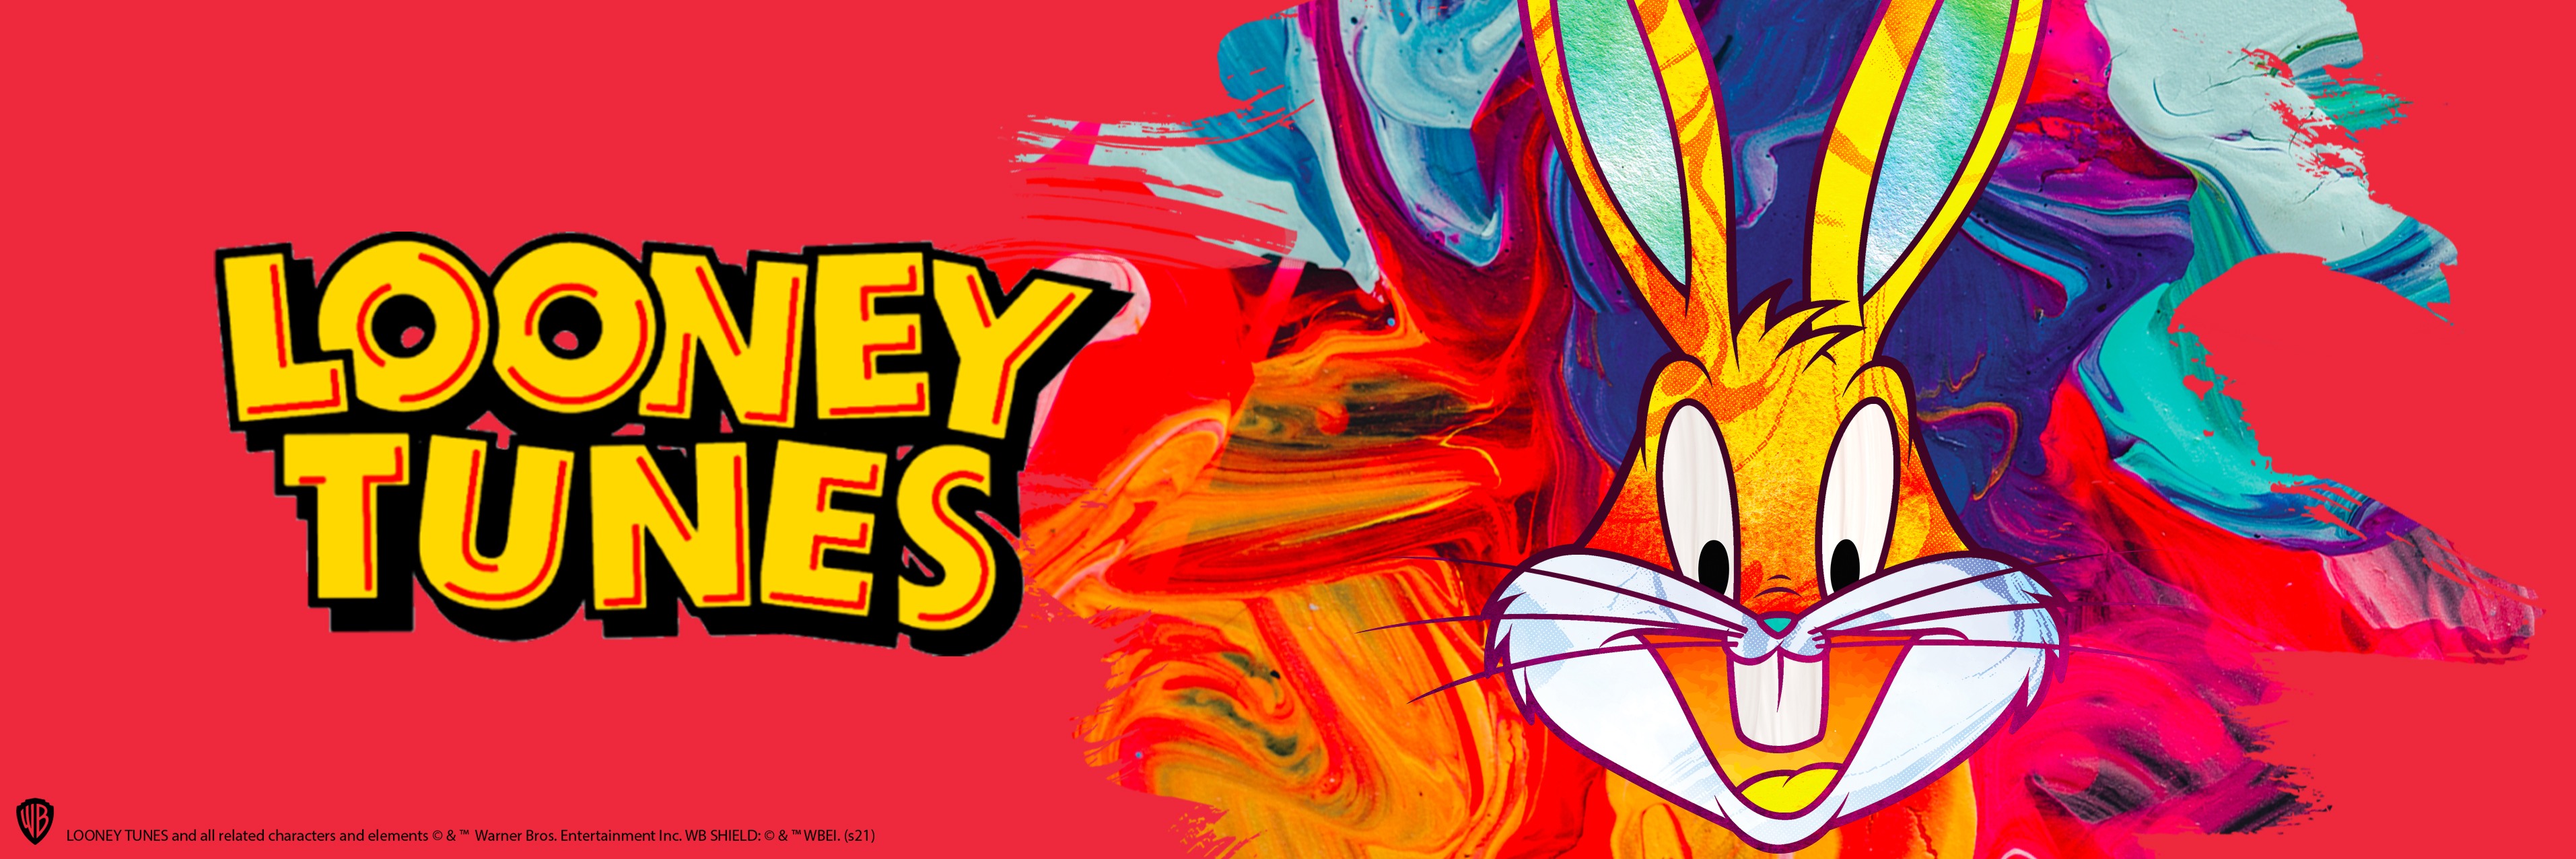 Looney Tunes - Poster und Plakate | Online kaufen bei